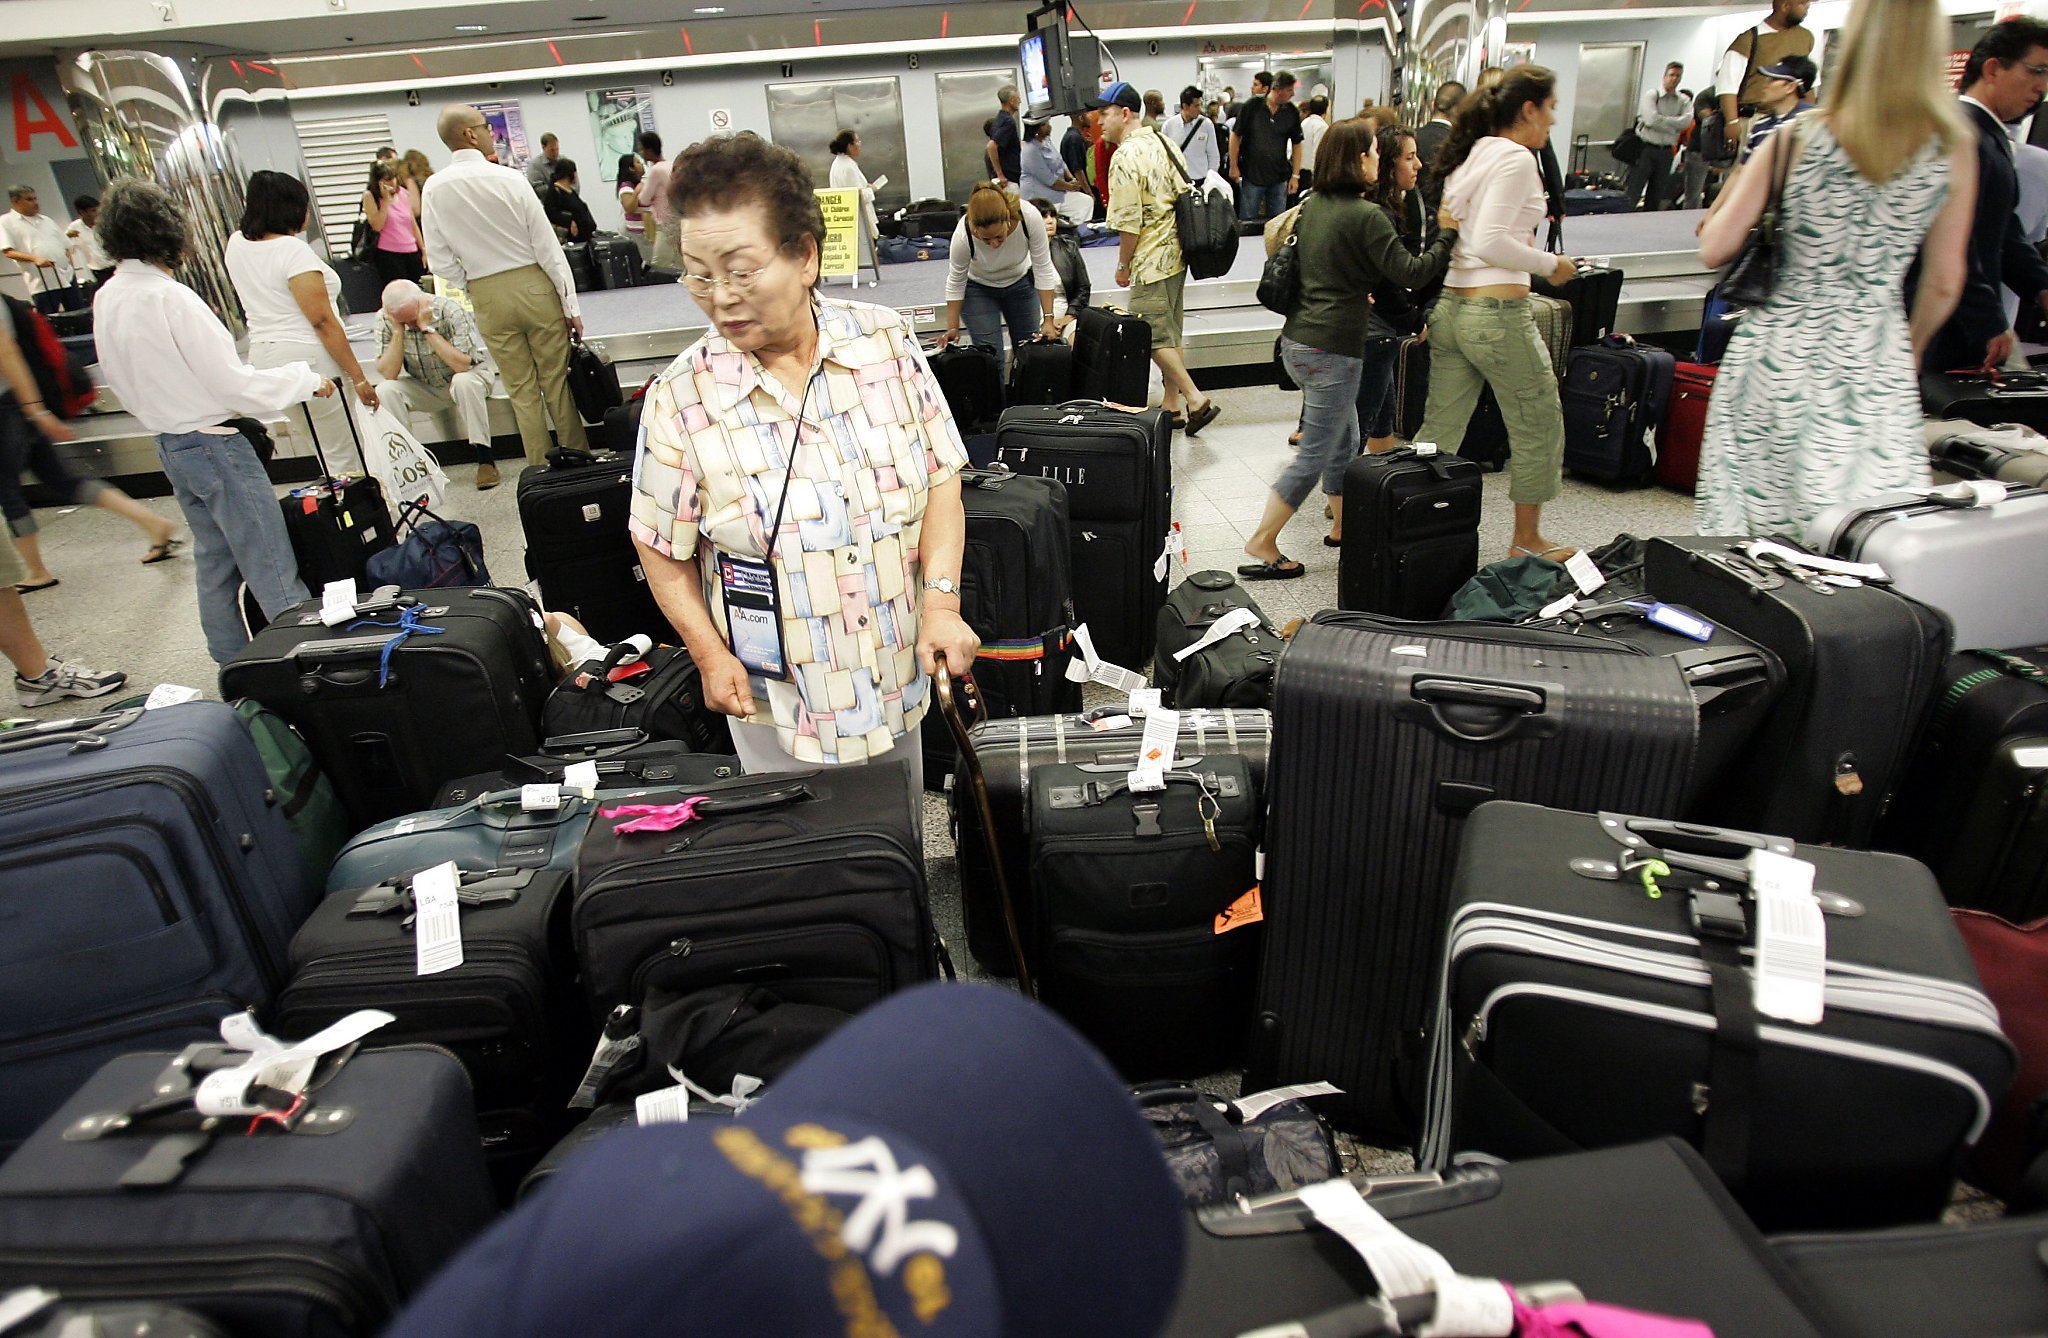 В аэропорту можно сдать. Чемодан самолет. Багажные сумки для самолета. Чемодан в аэропорту. Авиаперевозки пассажиров.